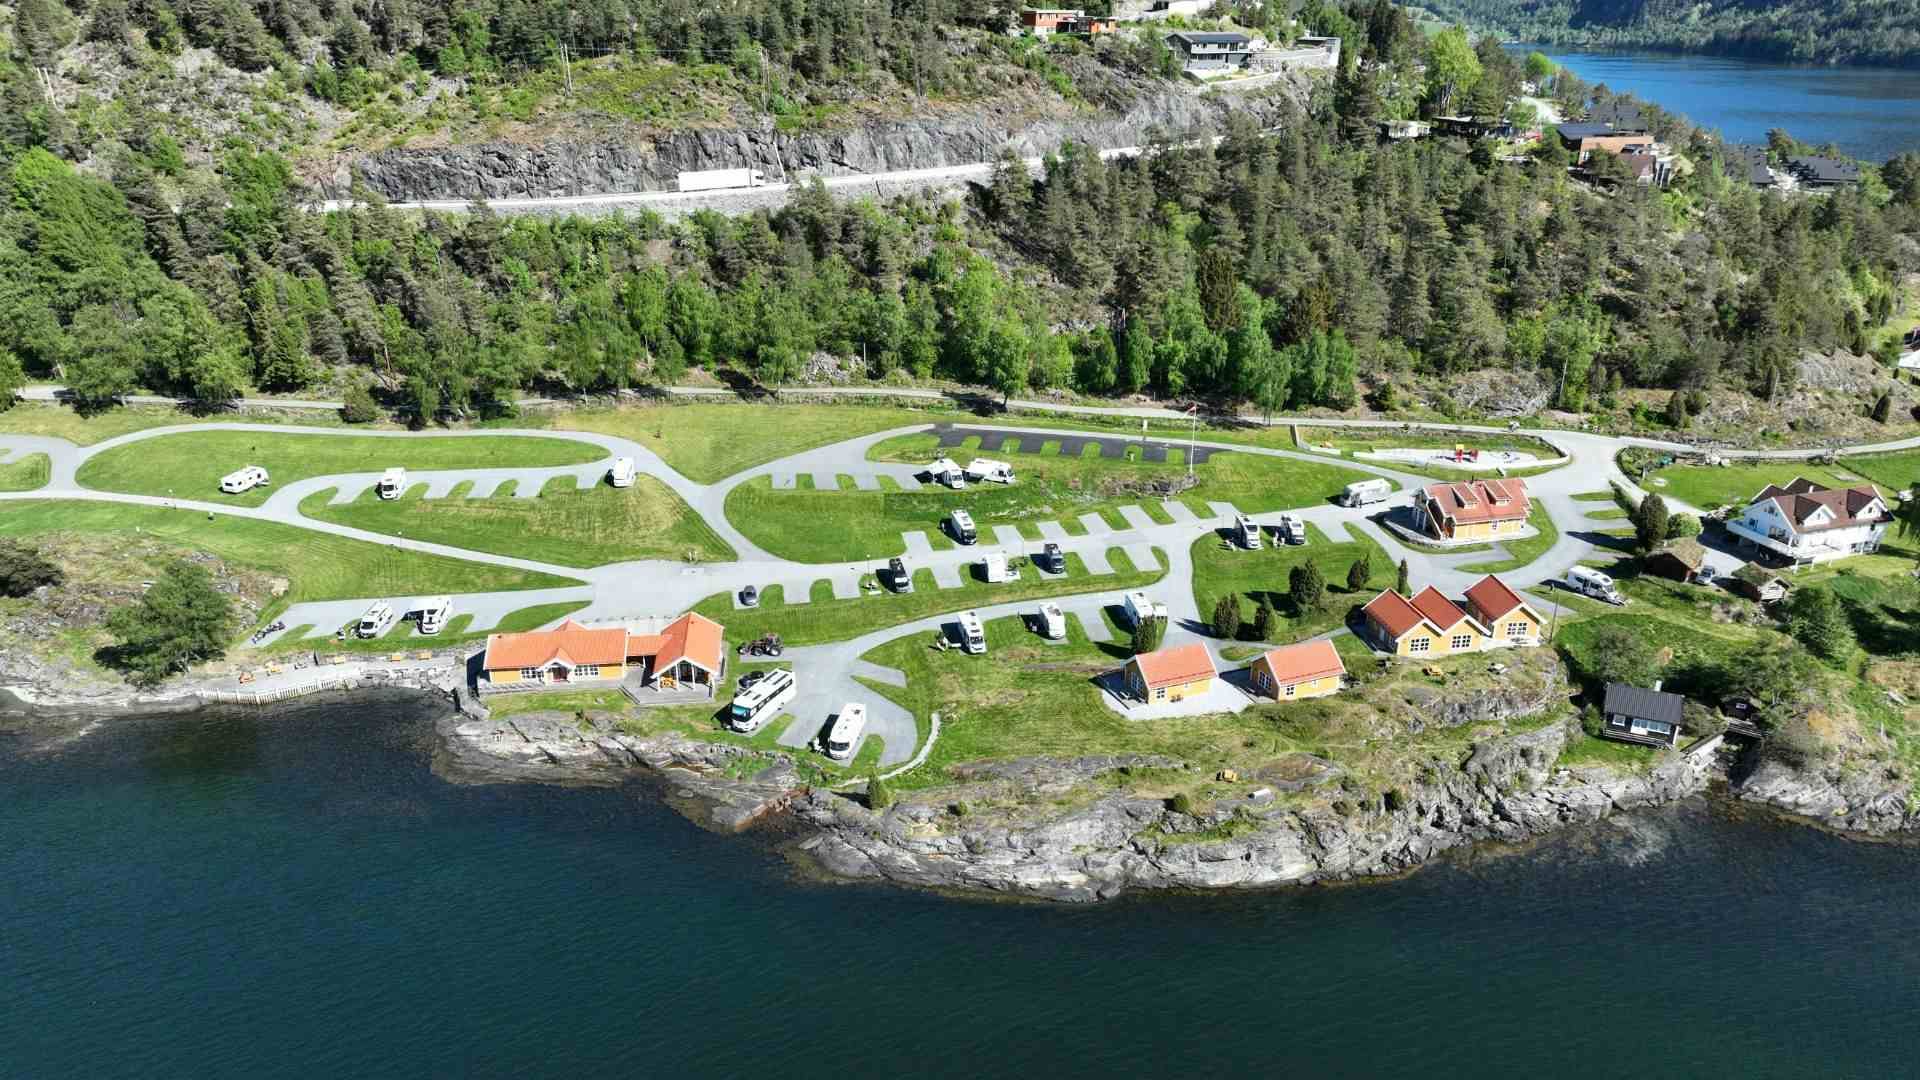 Kjørnes Camping & Fjordhytter